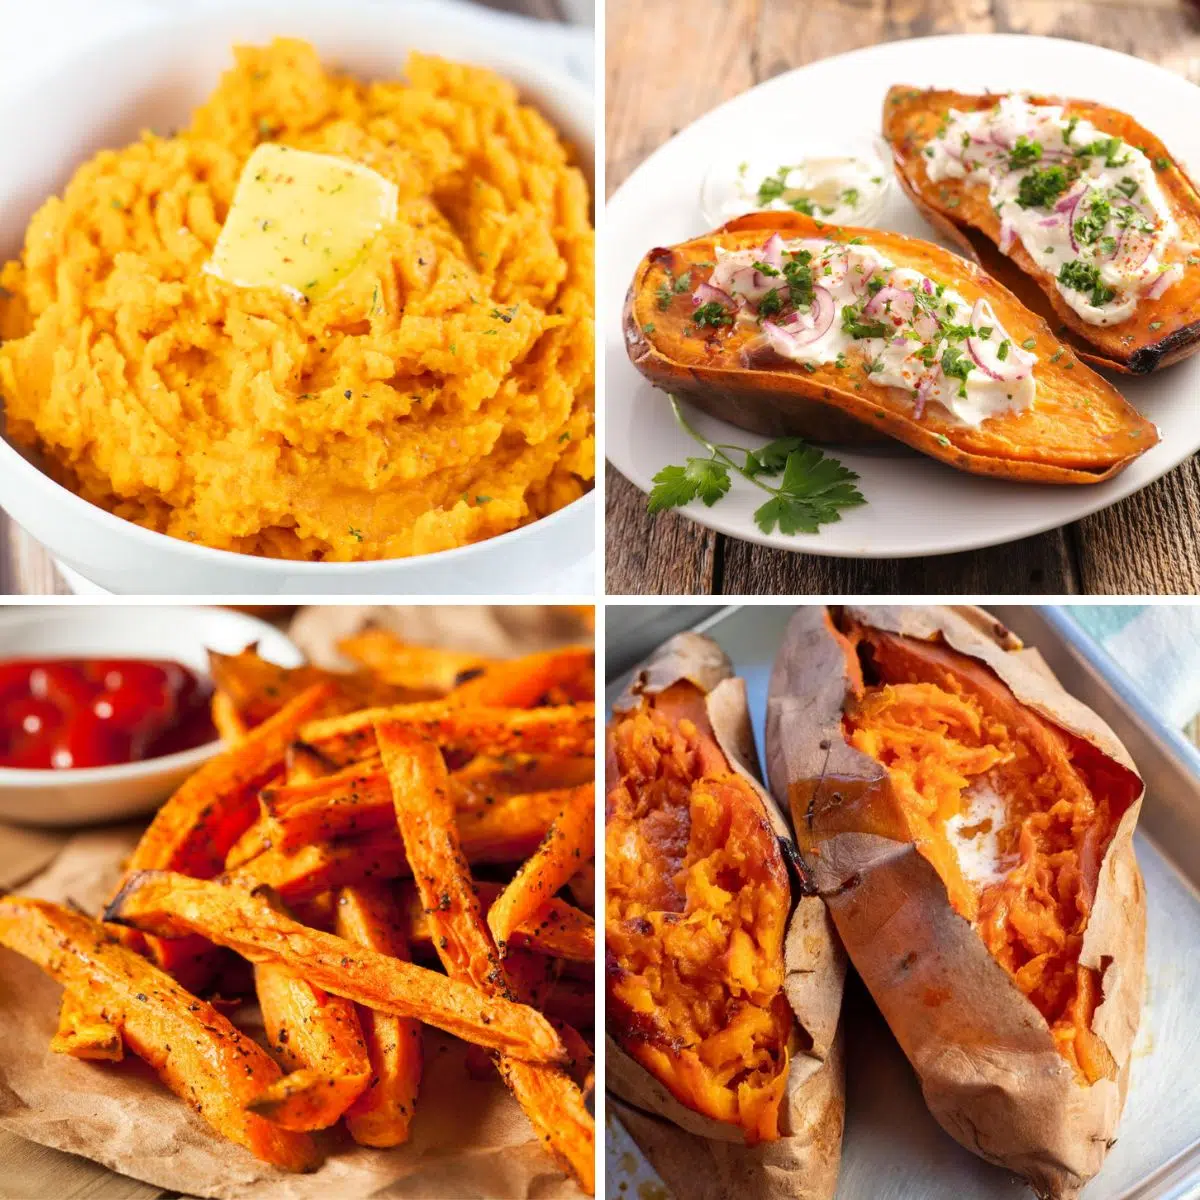 Gambar persegi 4 resep ubi jalar gurih yang berbeda.